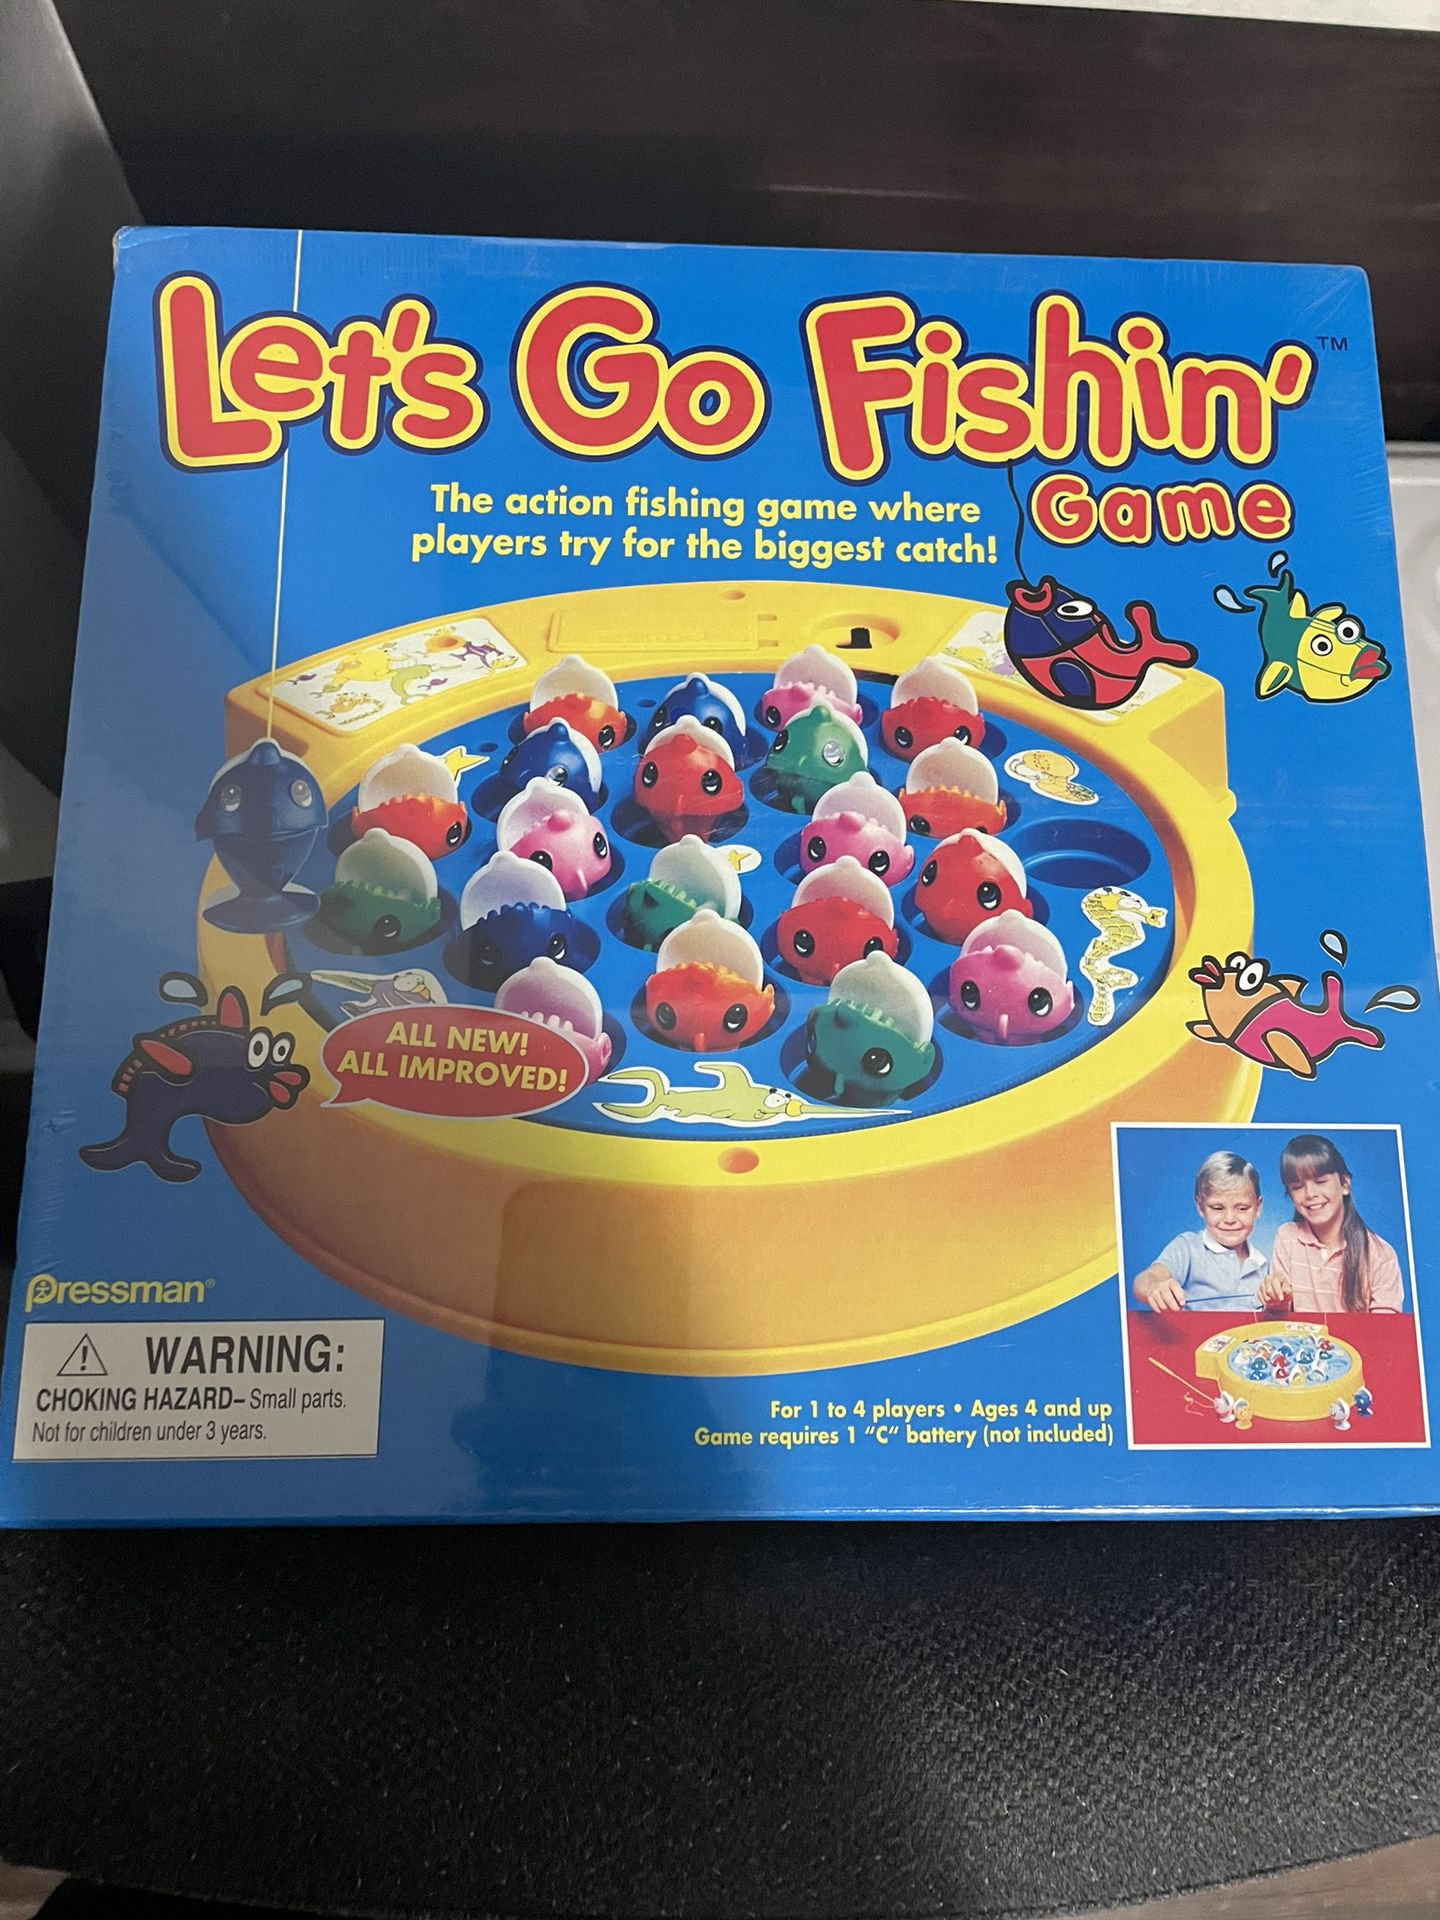 Fish Game